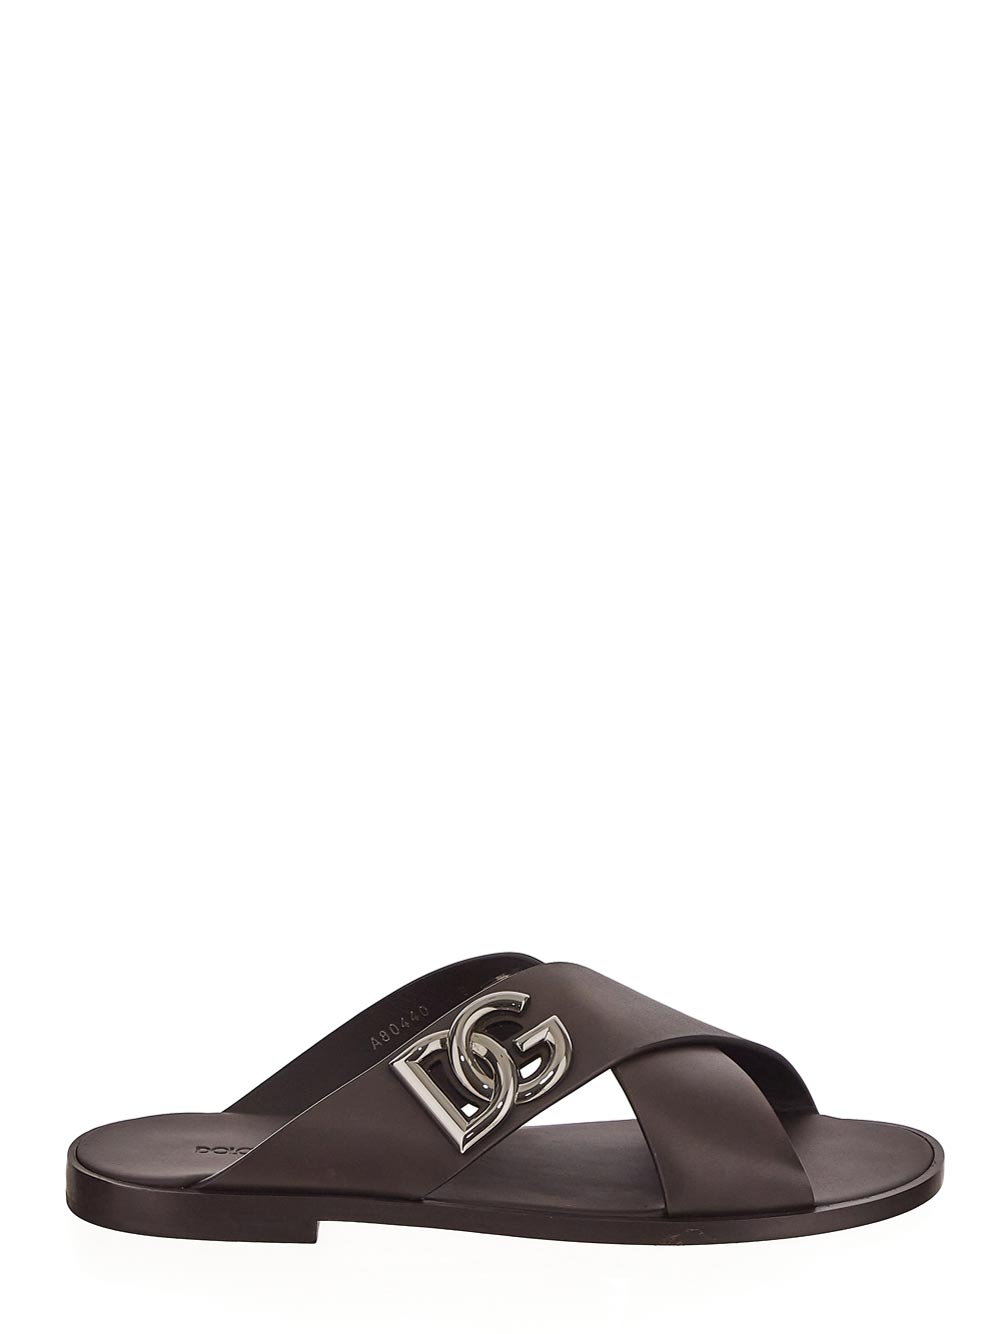 Dolce & Gabbana Calfskin Sandals